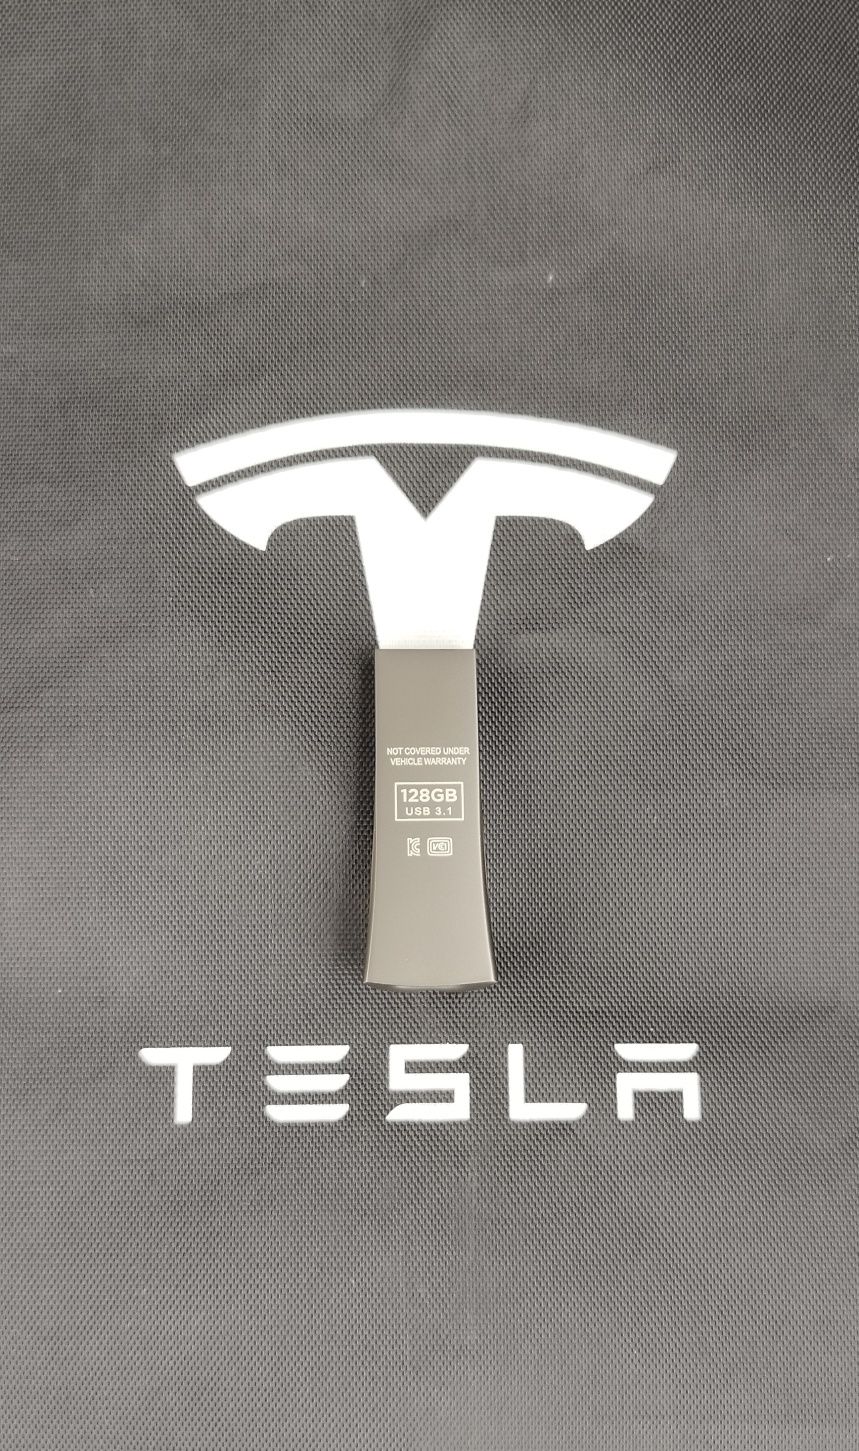 Флешка Tesla USB Stick 128 GB 3.1 оригінал